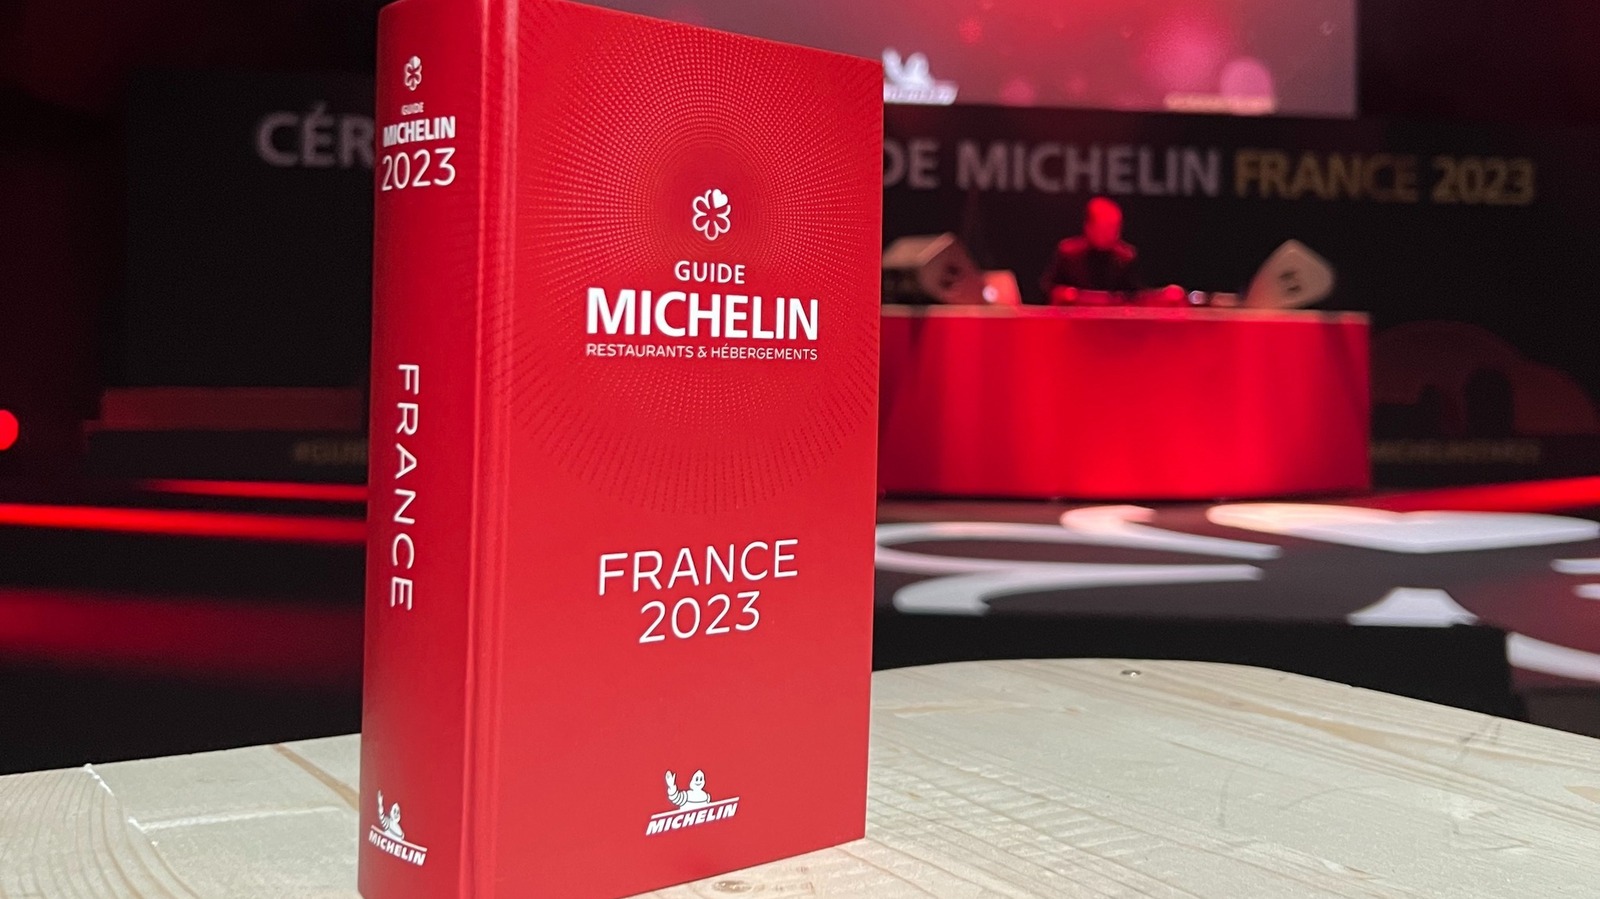 Le Guide Michelin 2023 de la France récupère les étoiles de 25 restaurants